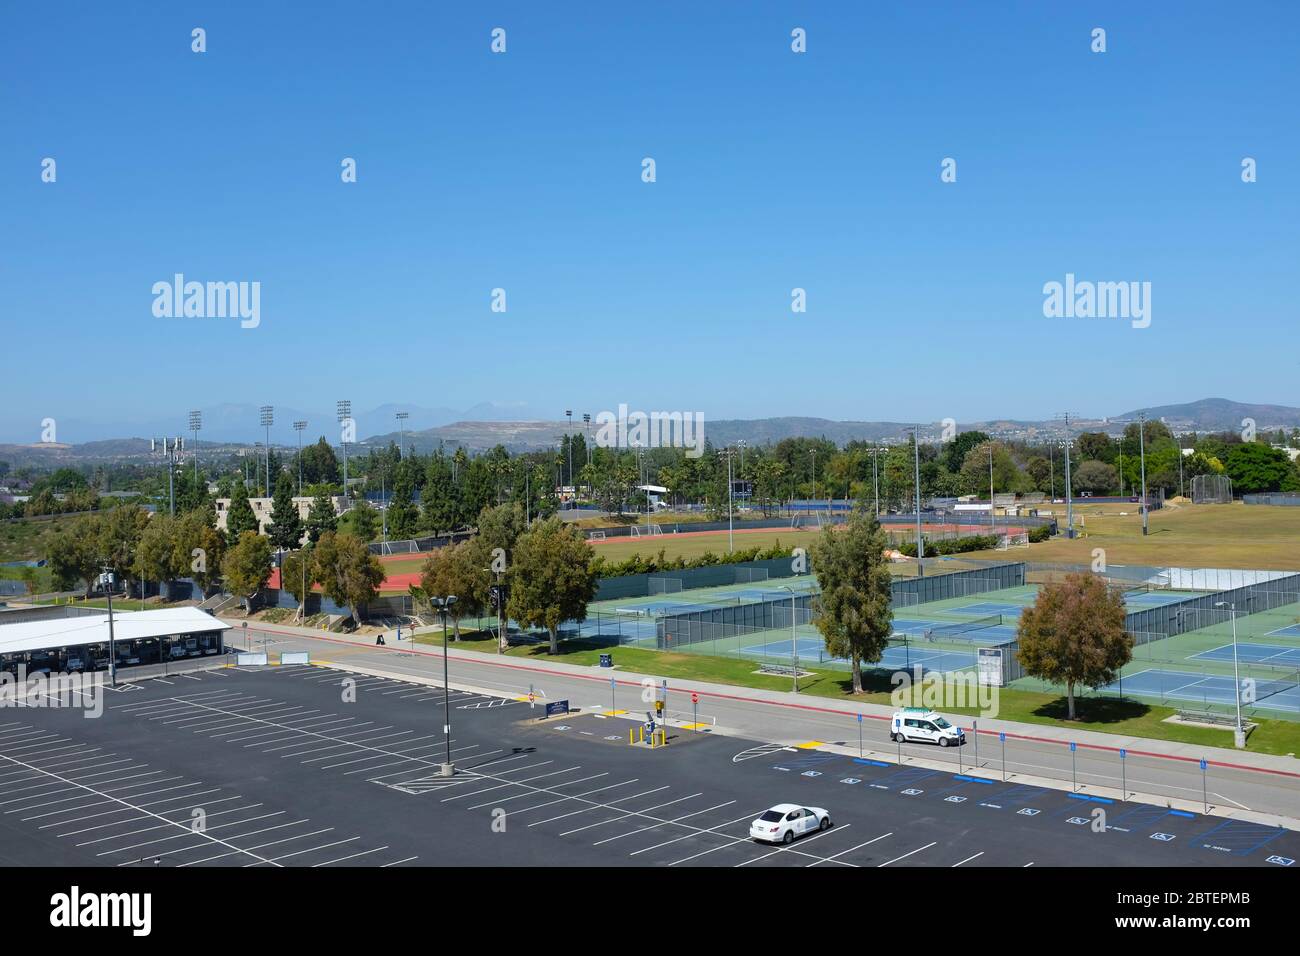 FULLERTON CALIFORNIA - 22 MAI 2020 : vue d'ensemble des champs d'athlétisme vus de la structure de stationnement sur le campus de l'Université d'État de Californie Fullerton Banque D'Images